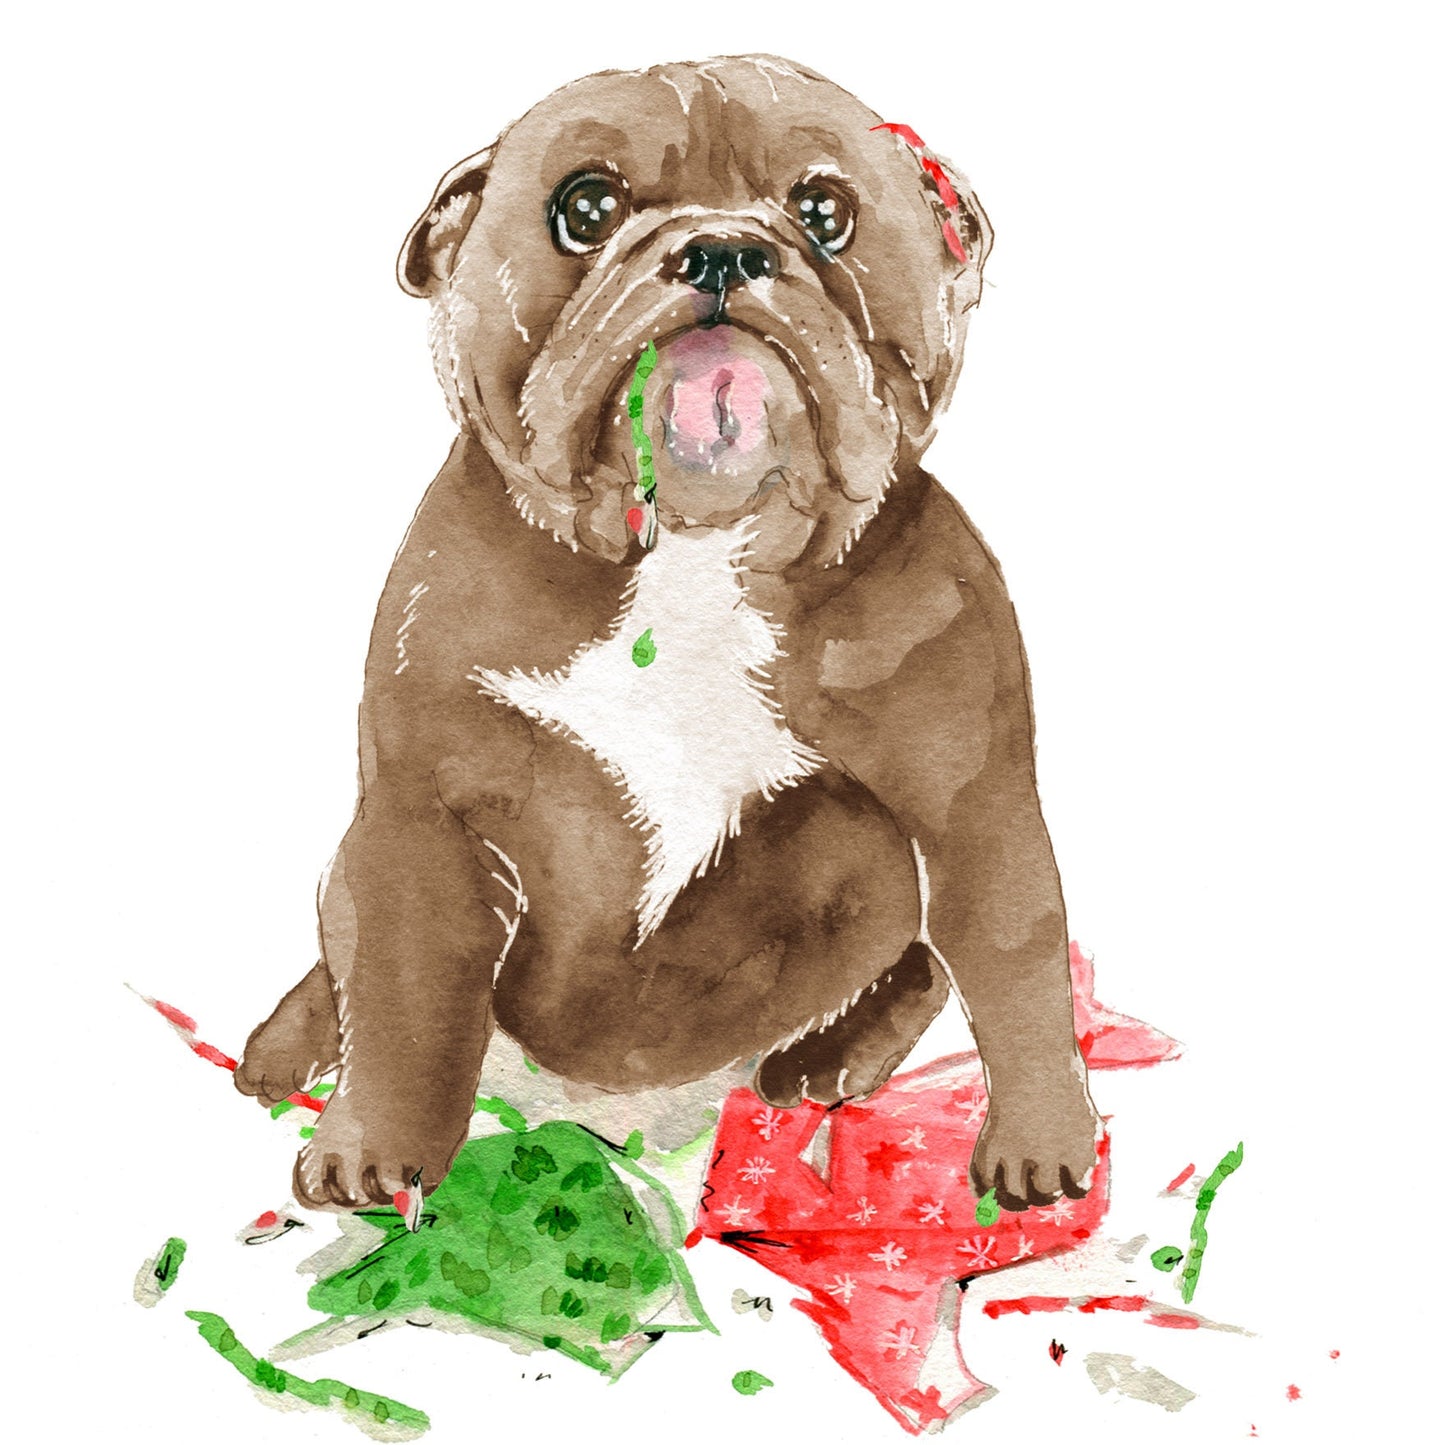 Pitbull Dog Christmas Card Funny - Naughty Or Nice - Bull Dog Mom Holiday Gift - Liyana Studio